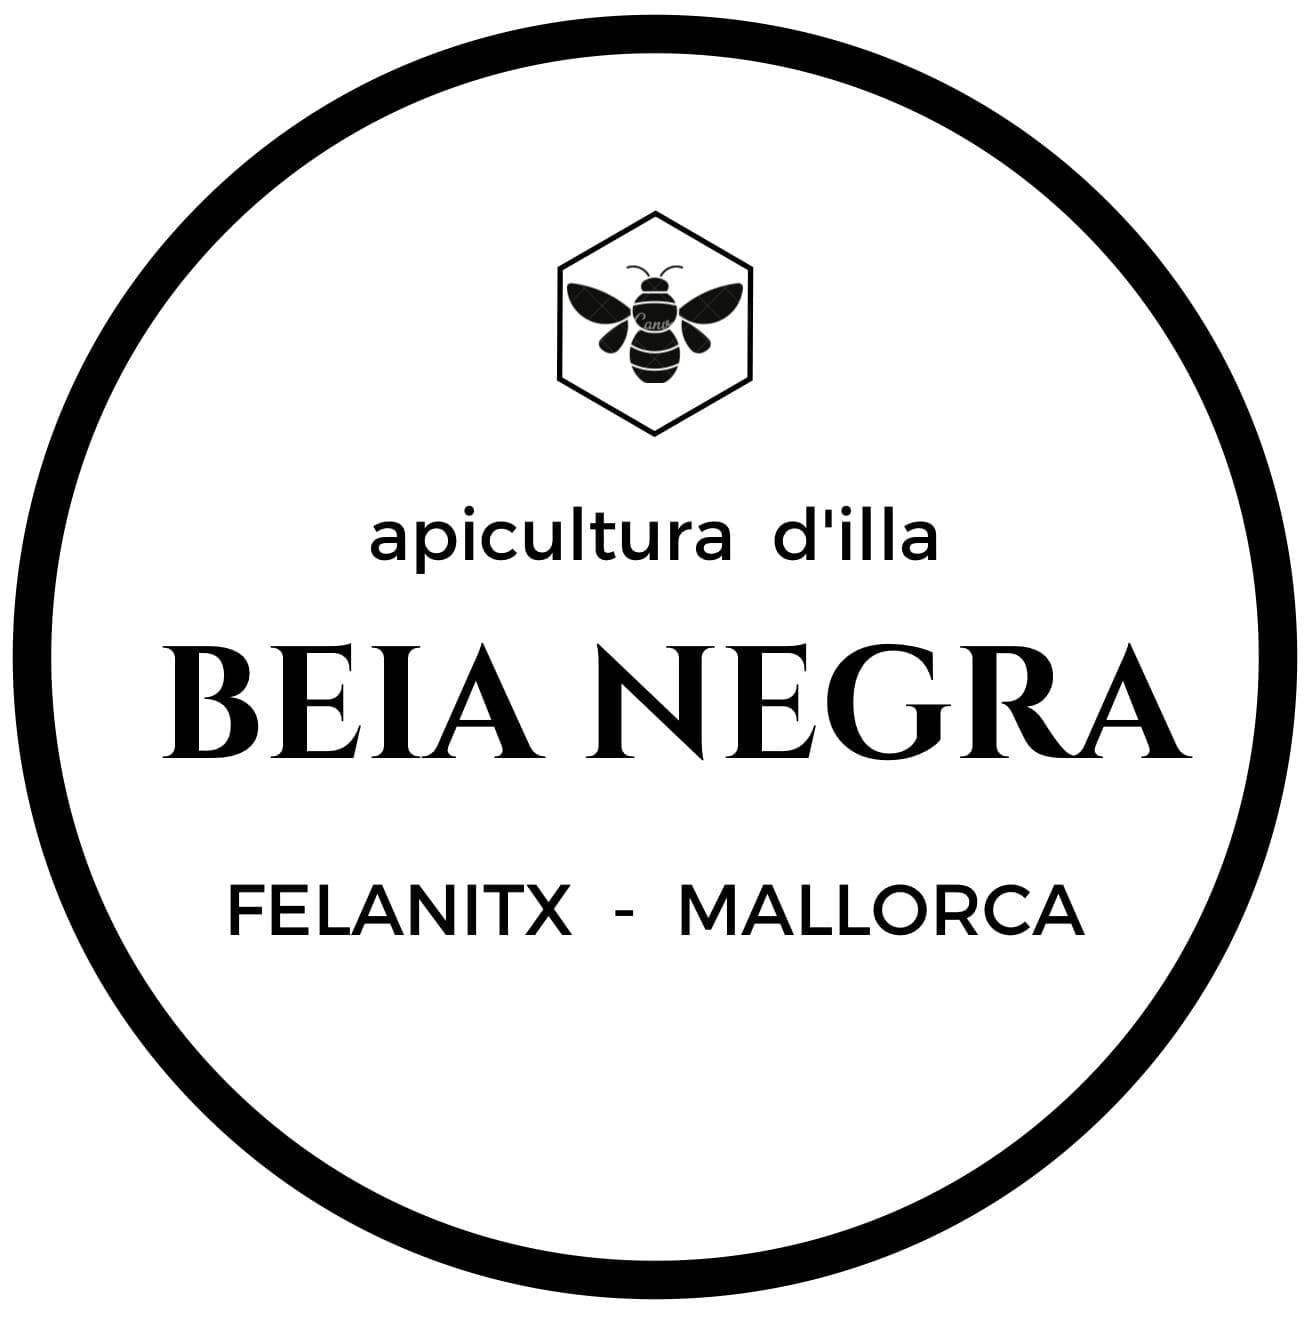 Miel 100% de Mallorca -Producto autentico y de calidad fruto de un delicado trabajo con pasión por las abejas.